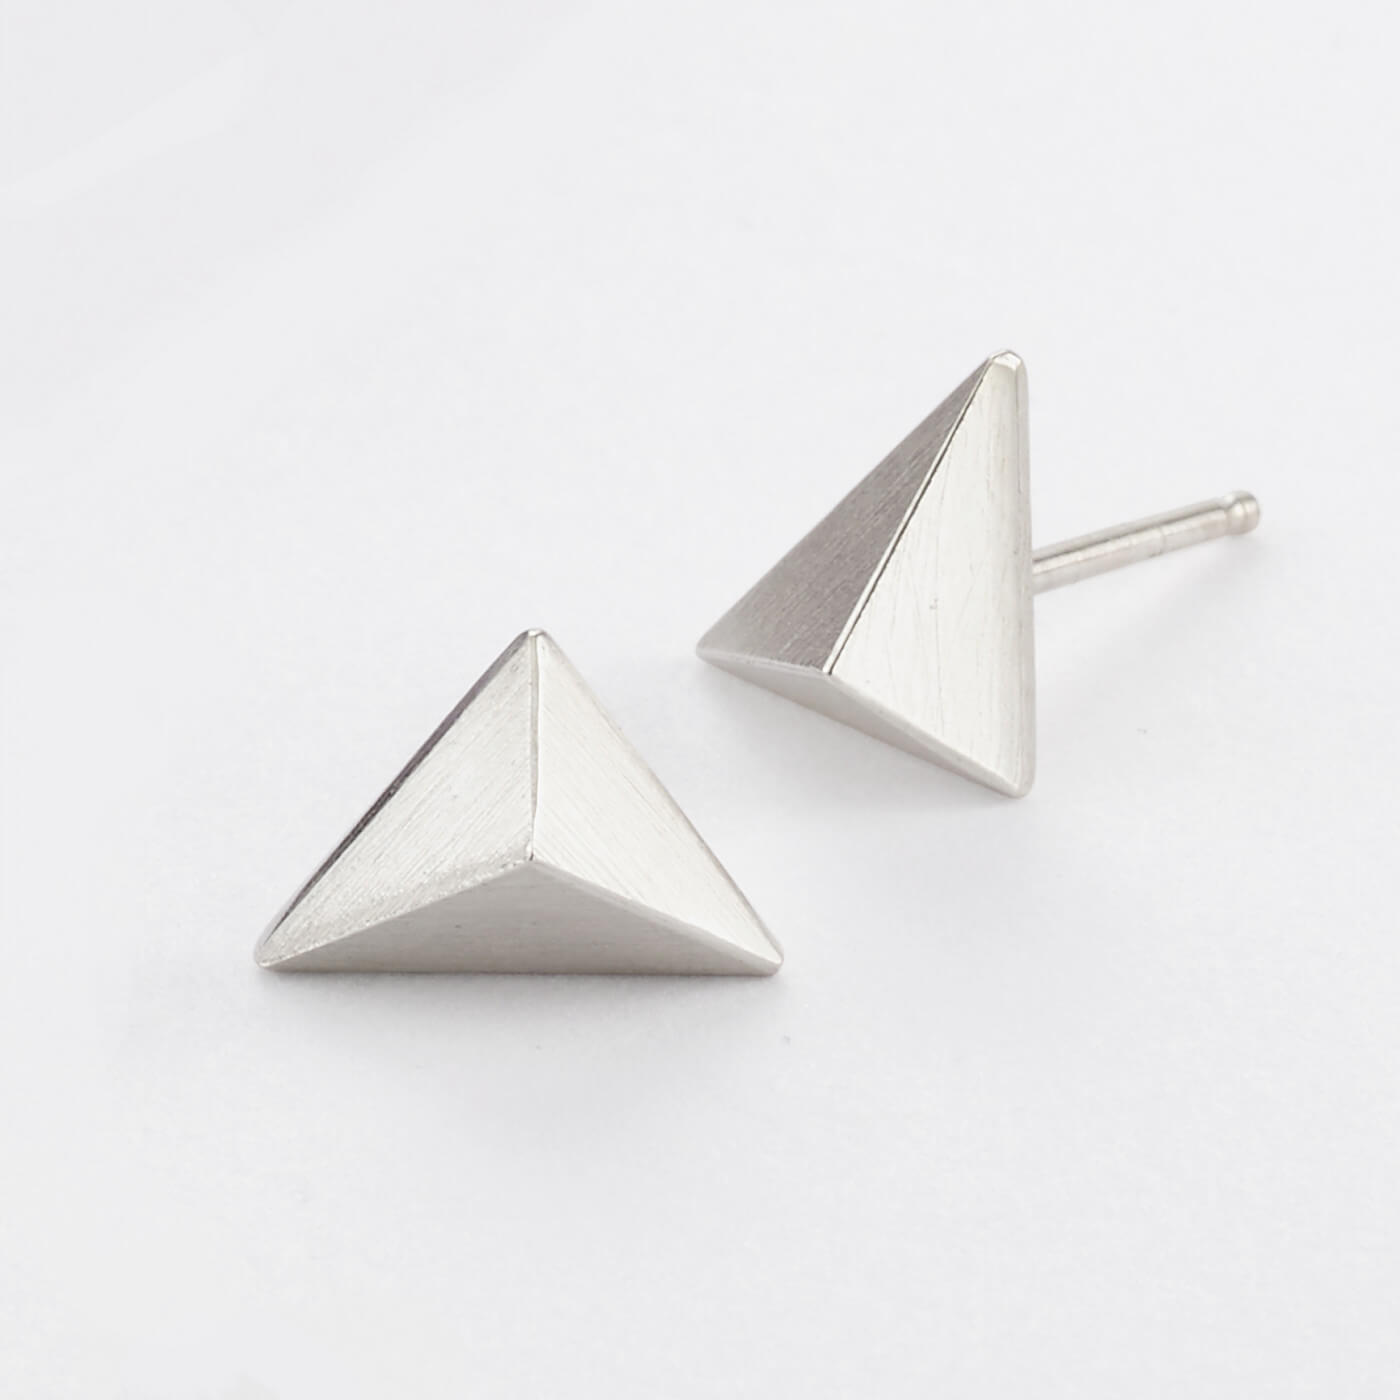 Pyramid Studs by Corkie Bolton Jewelry